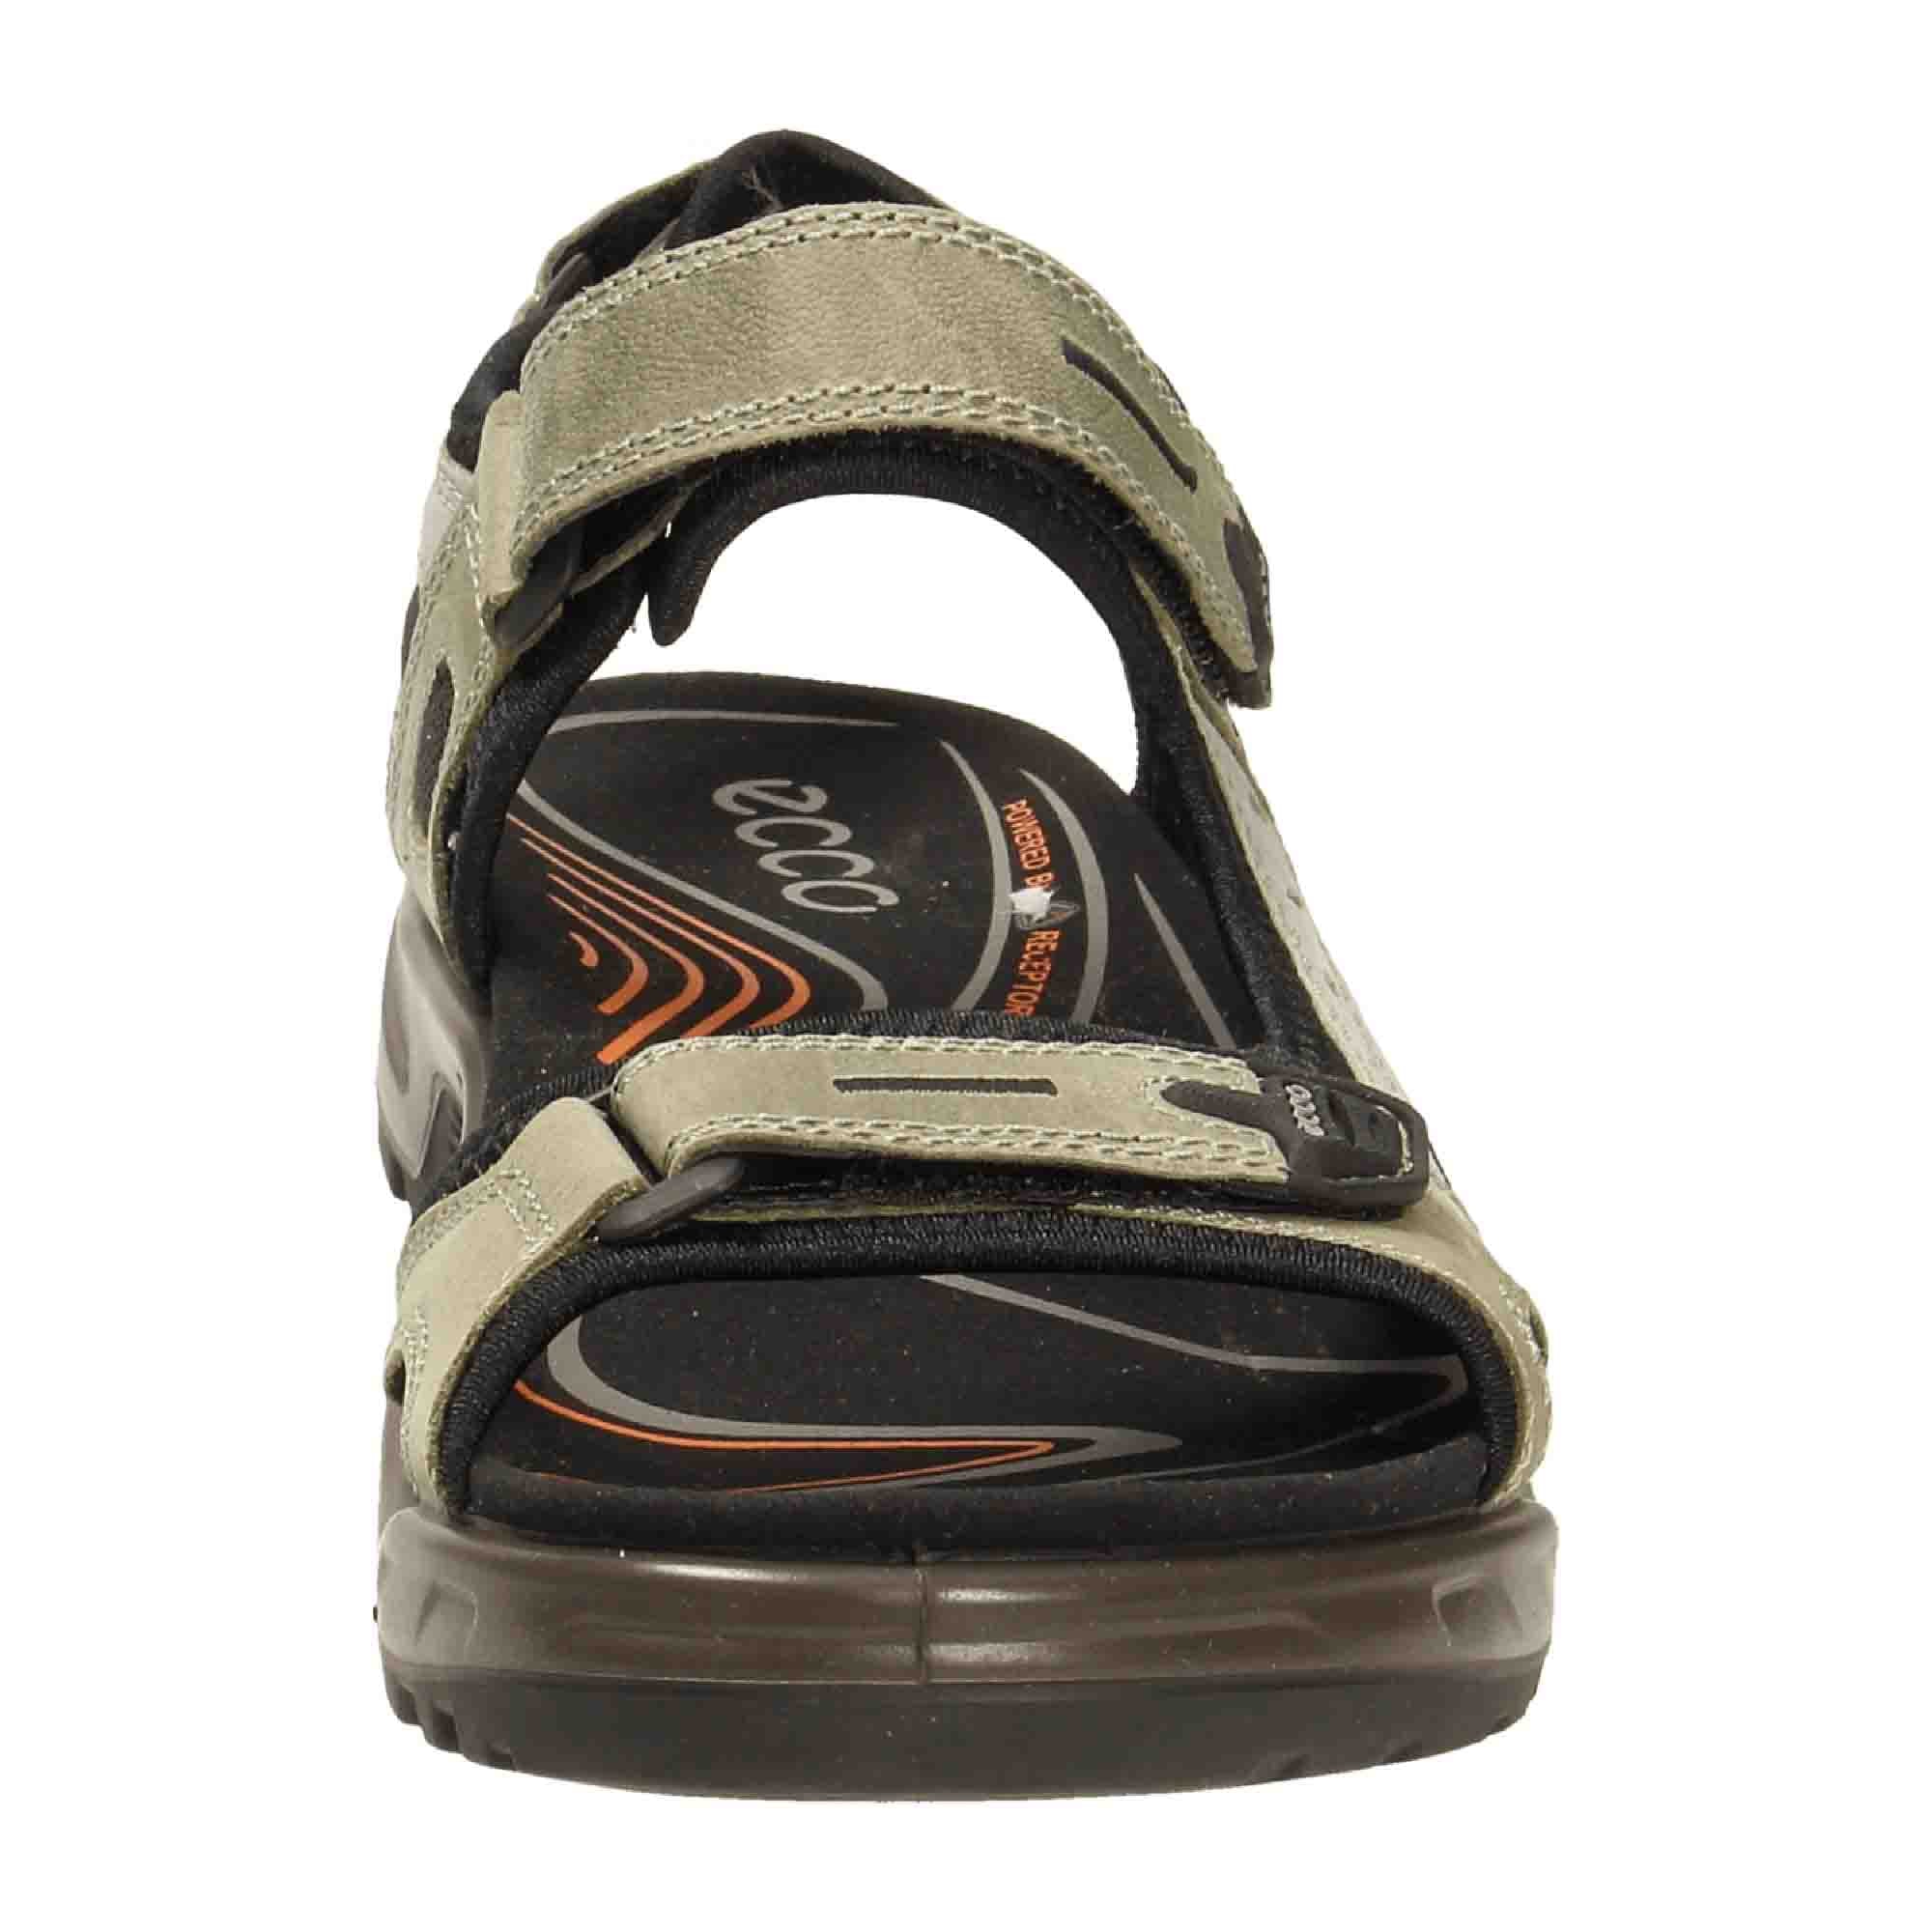 Ecco Men's OFFROAD Sandal Beige - Durable Outdoor Trekking Sandals